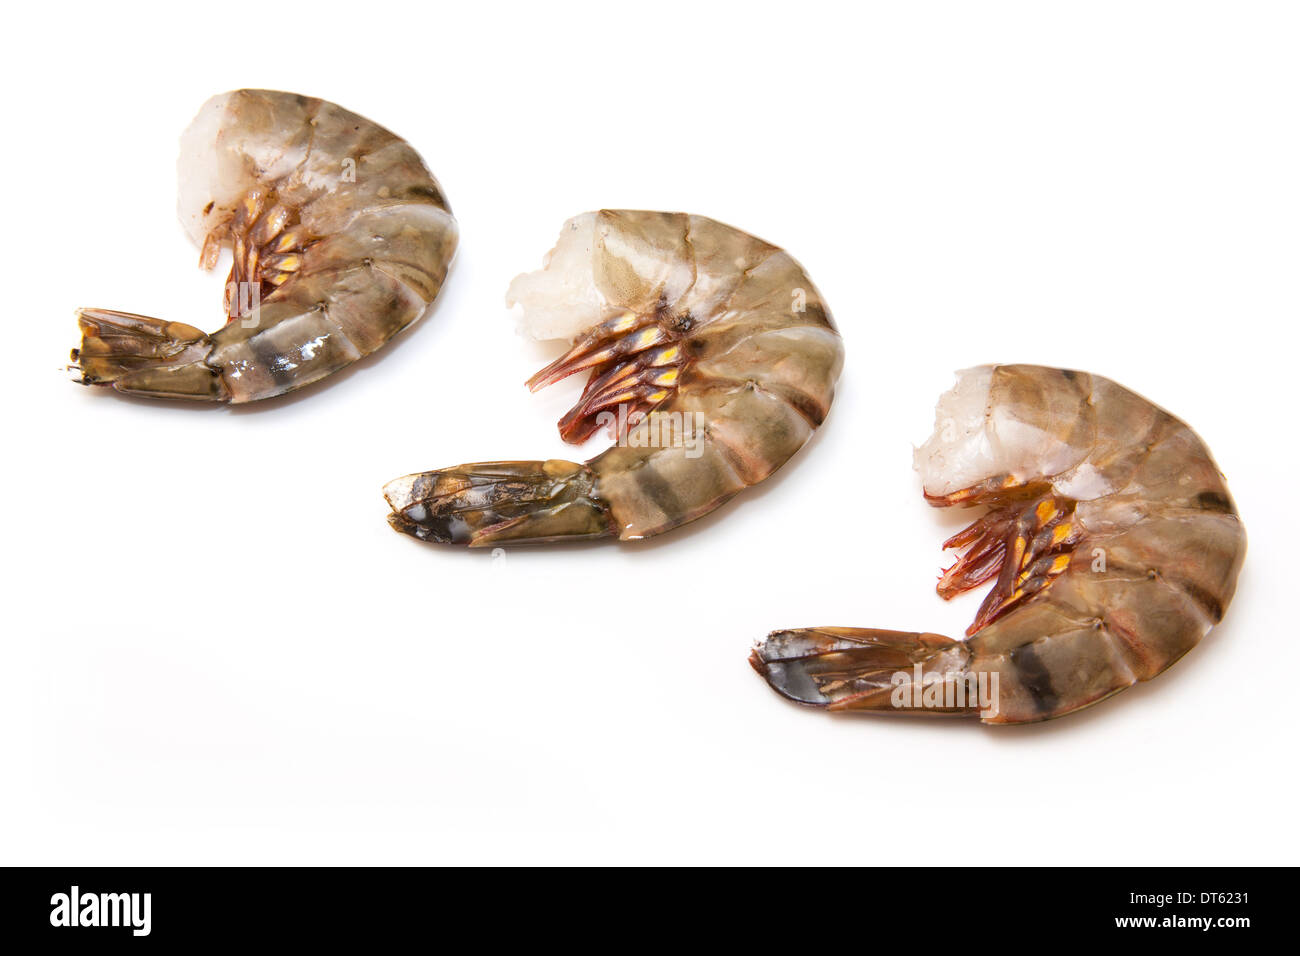 Grande crevette ou tigre asiatique- Crevettes Penaeus monodon. Isolé sur un fond blanc studio. Banque D'Images